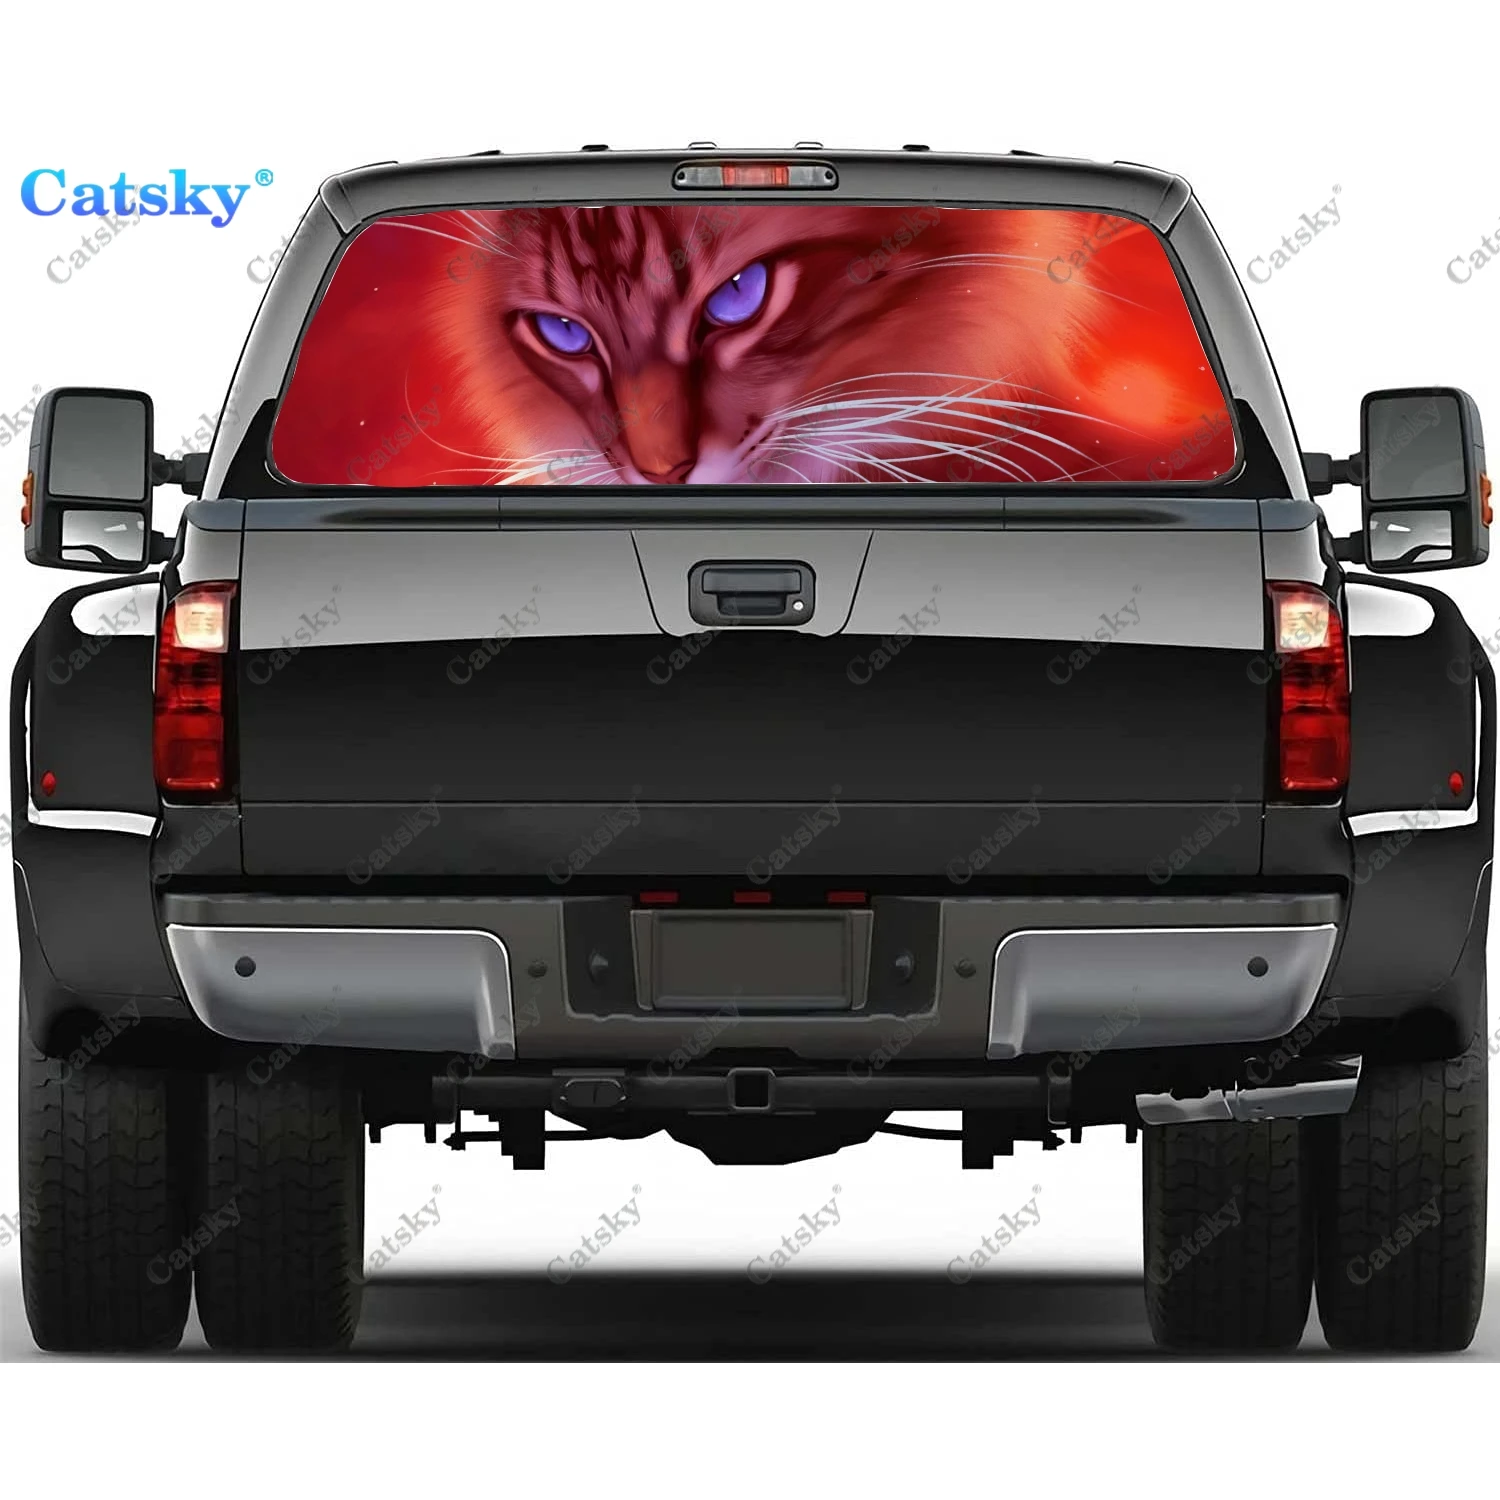 

Фантастические аниме наклейки на заднее стекло с котом для грузовика, наклейка на окно пикапа, тинт для заднего стекла, графическая перфорированная виниловая наклейка для грузовика